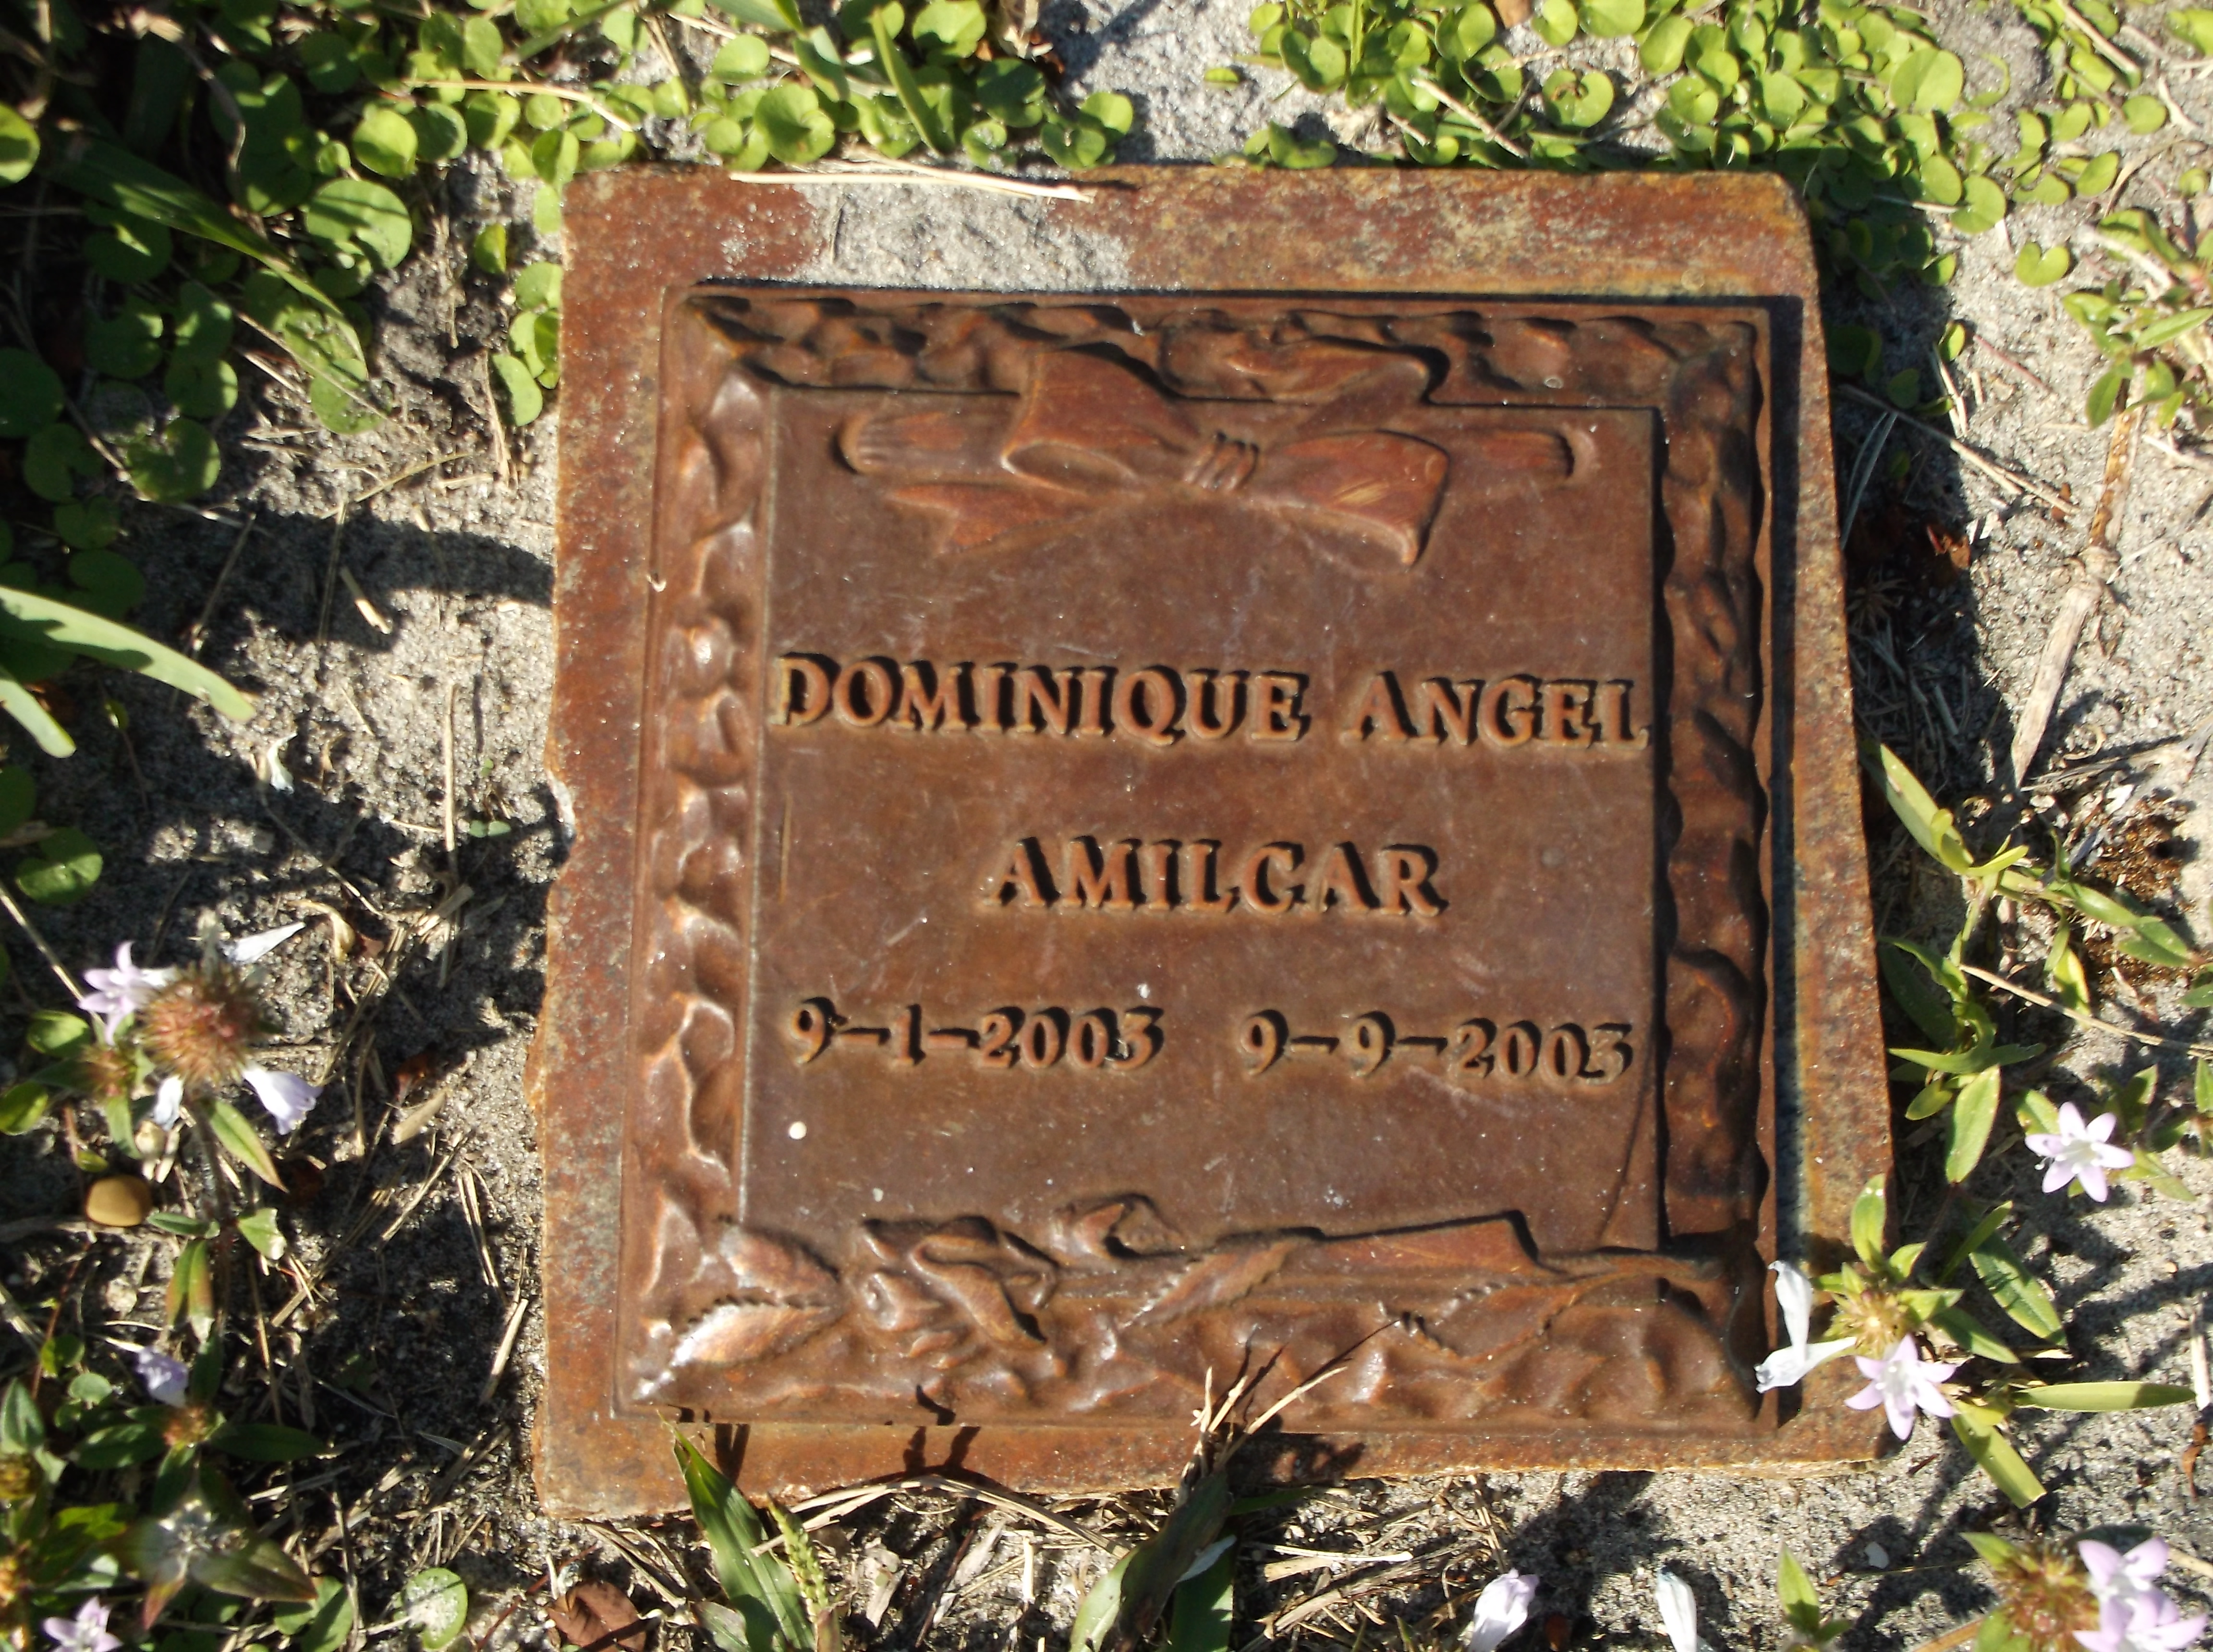 Dominique Angel Amilcar